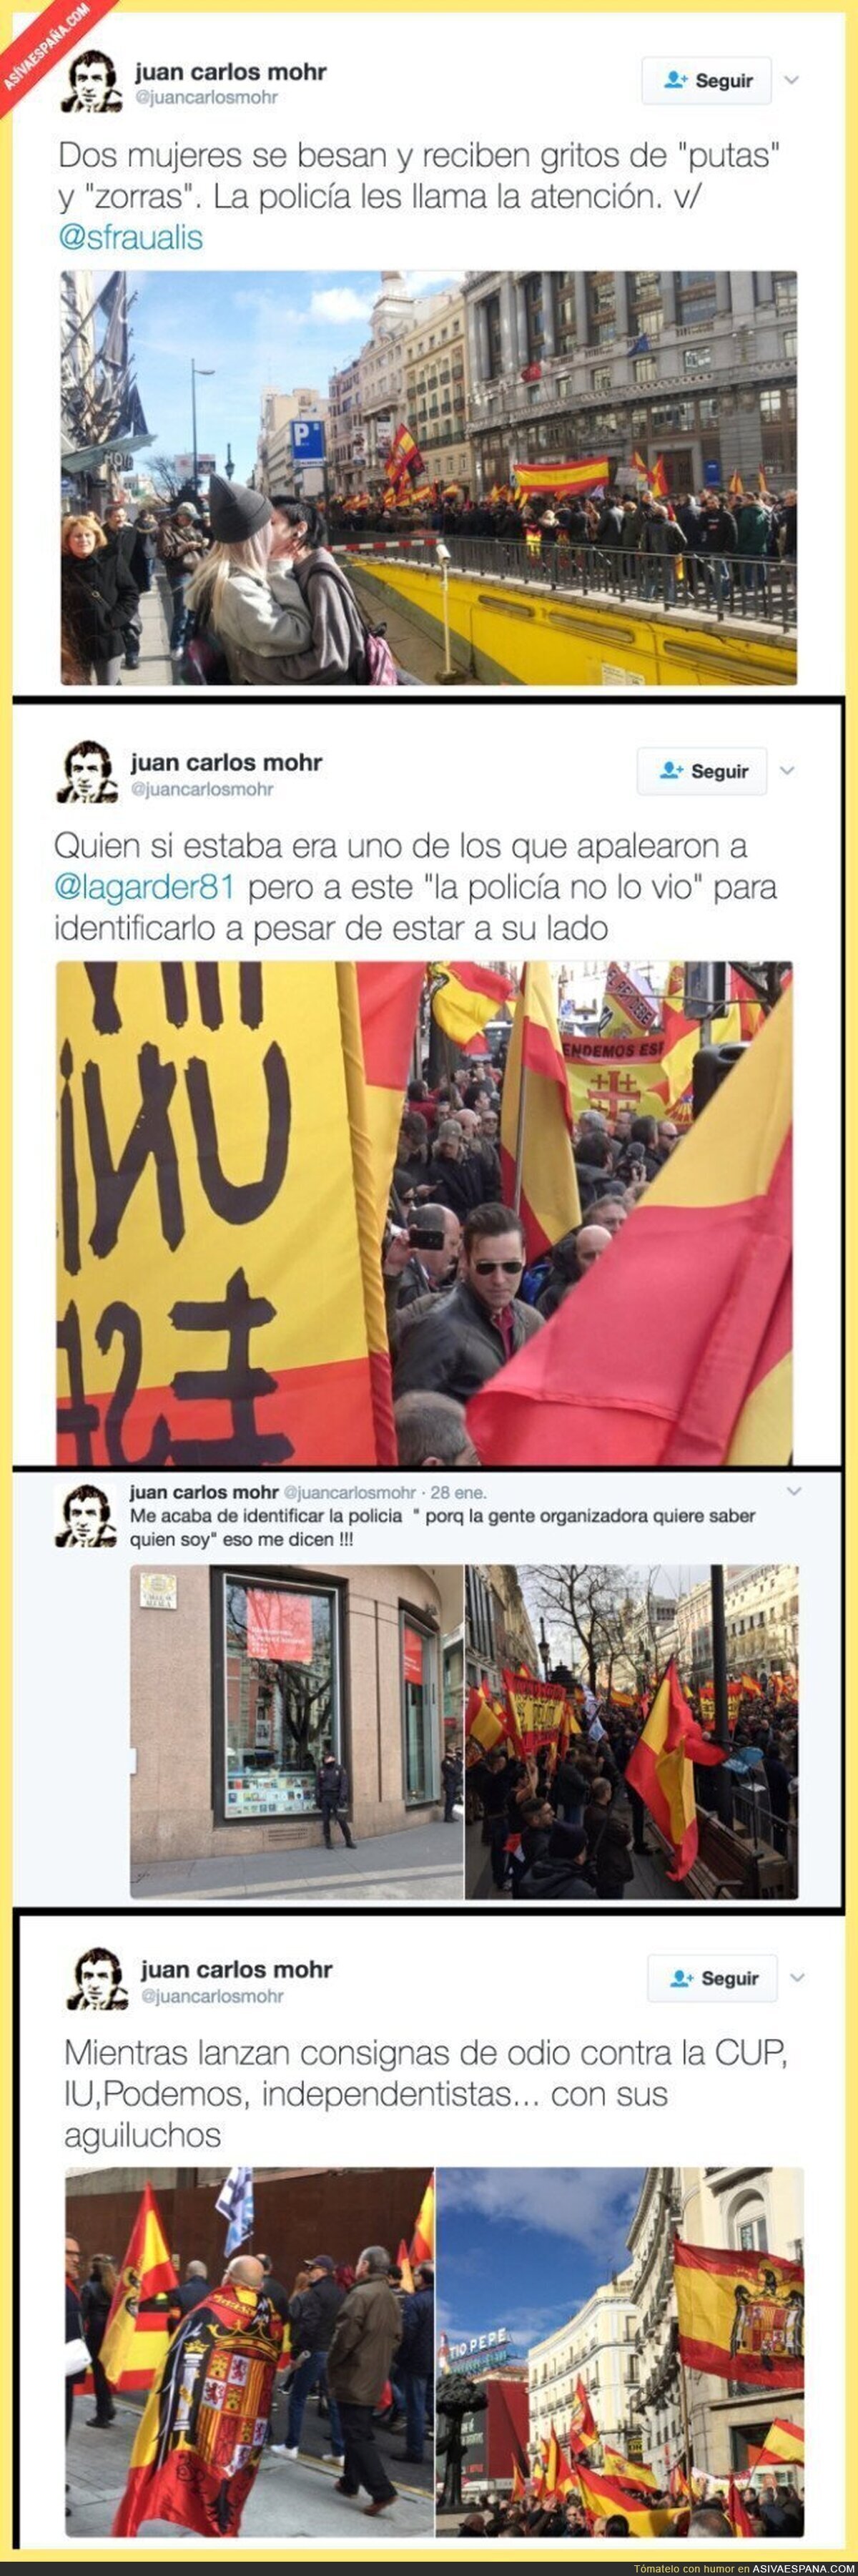 No es España en época franquista, es España en 2017